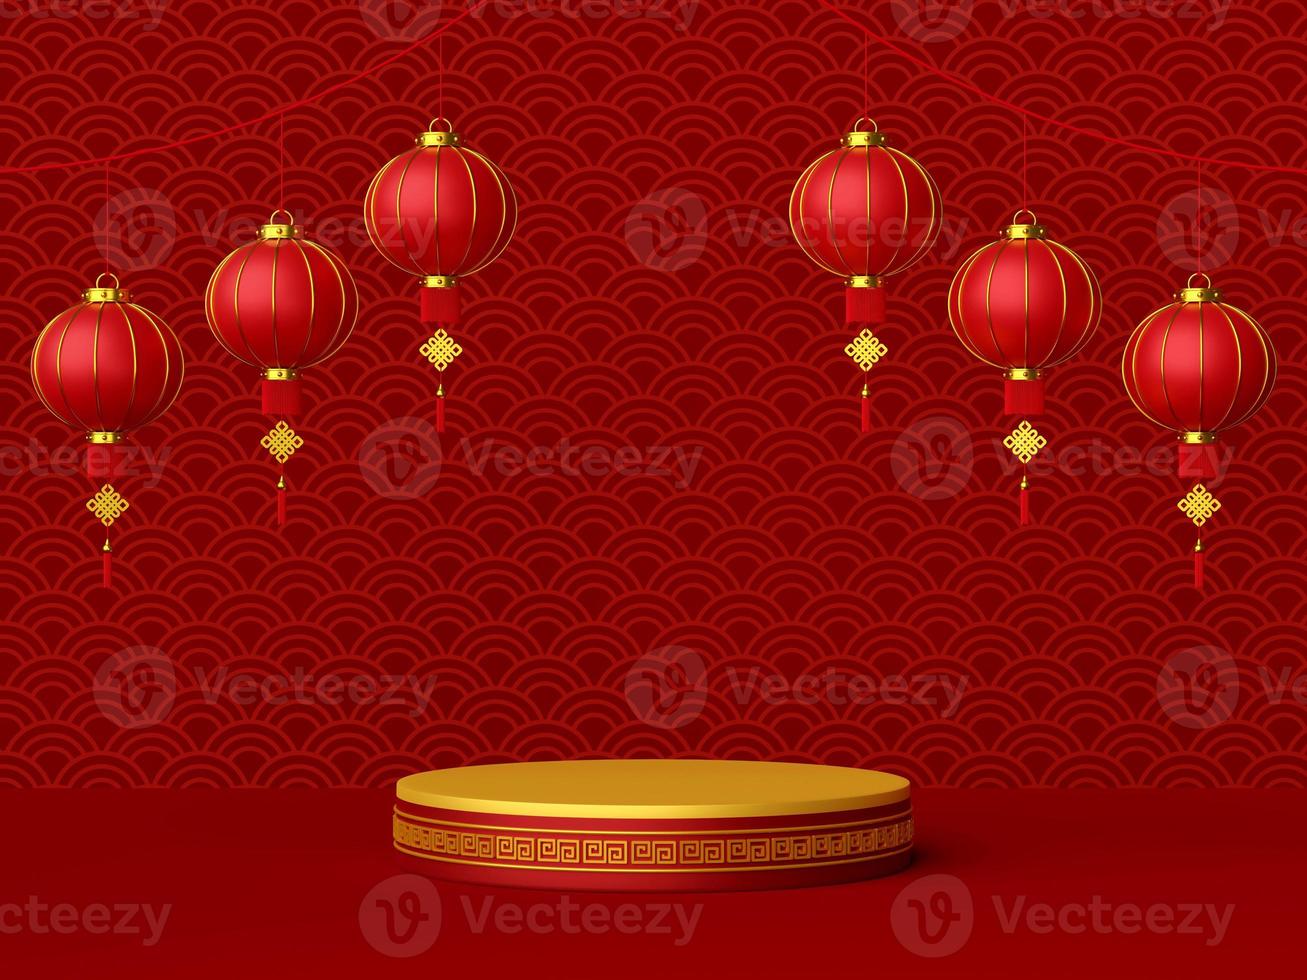 Illustrazione 3d del podio con lanterna cinese, felice anno nuovo cinese foto